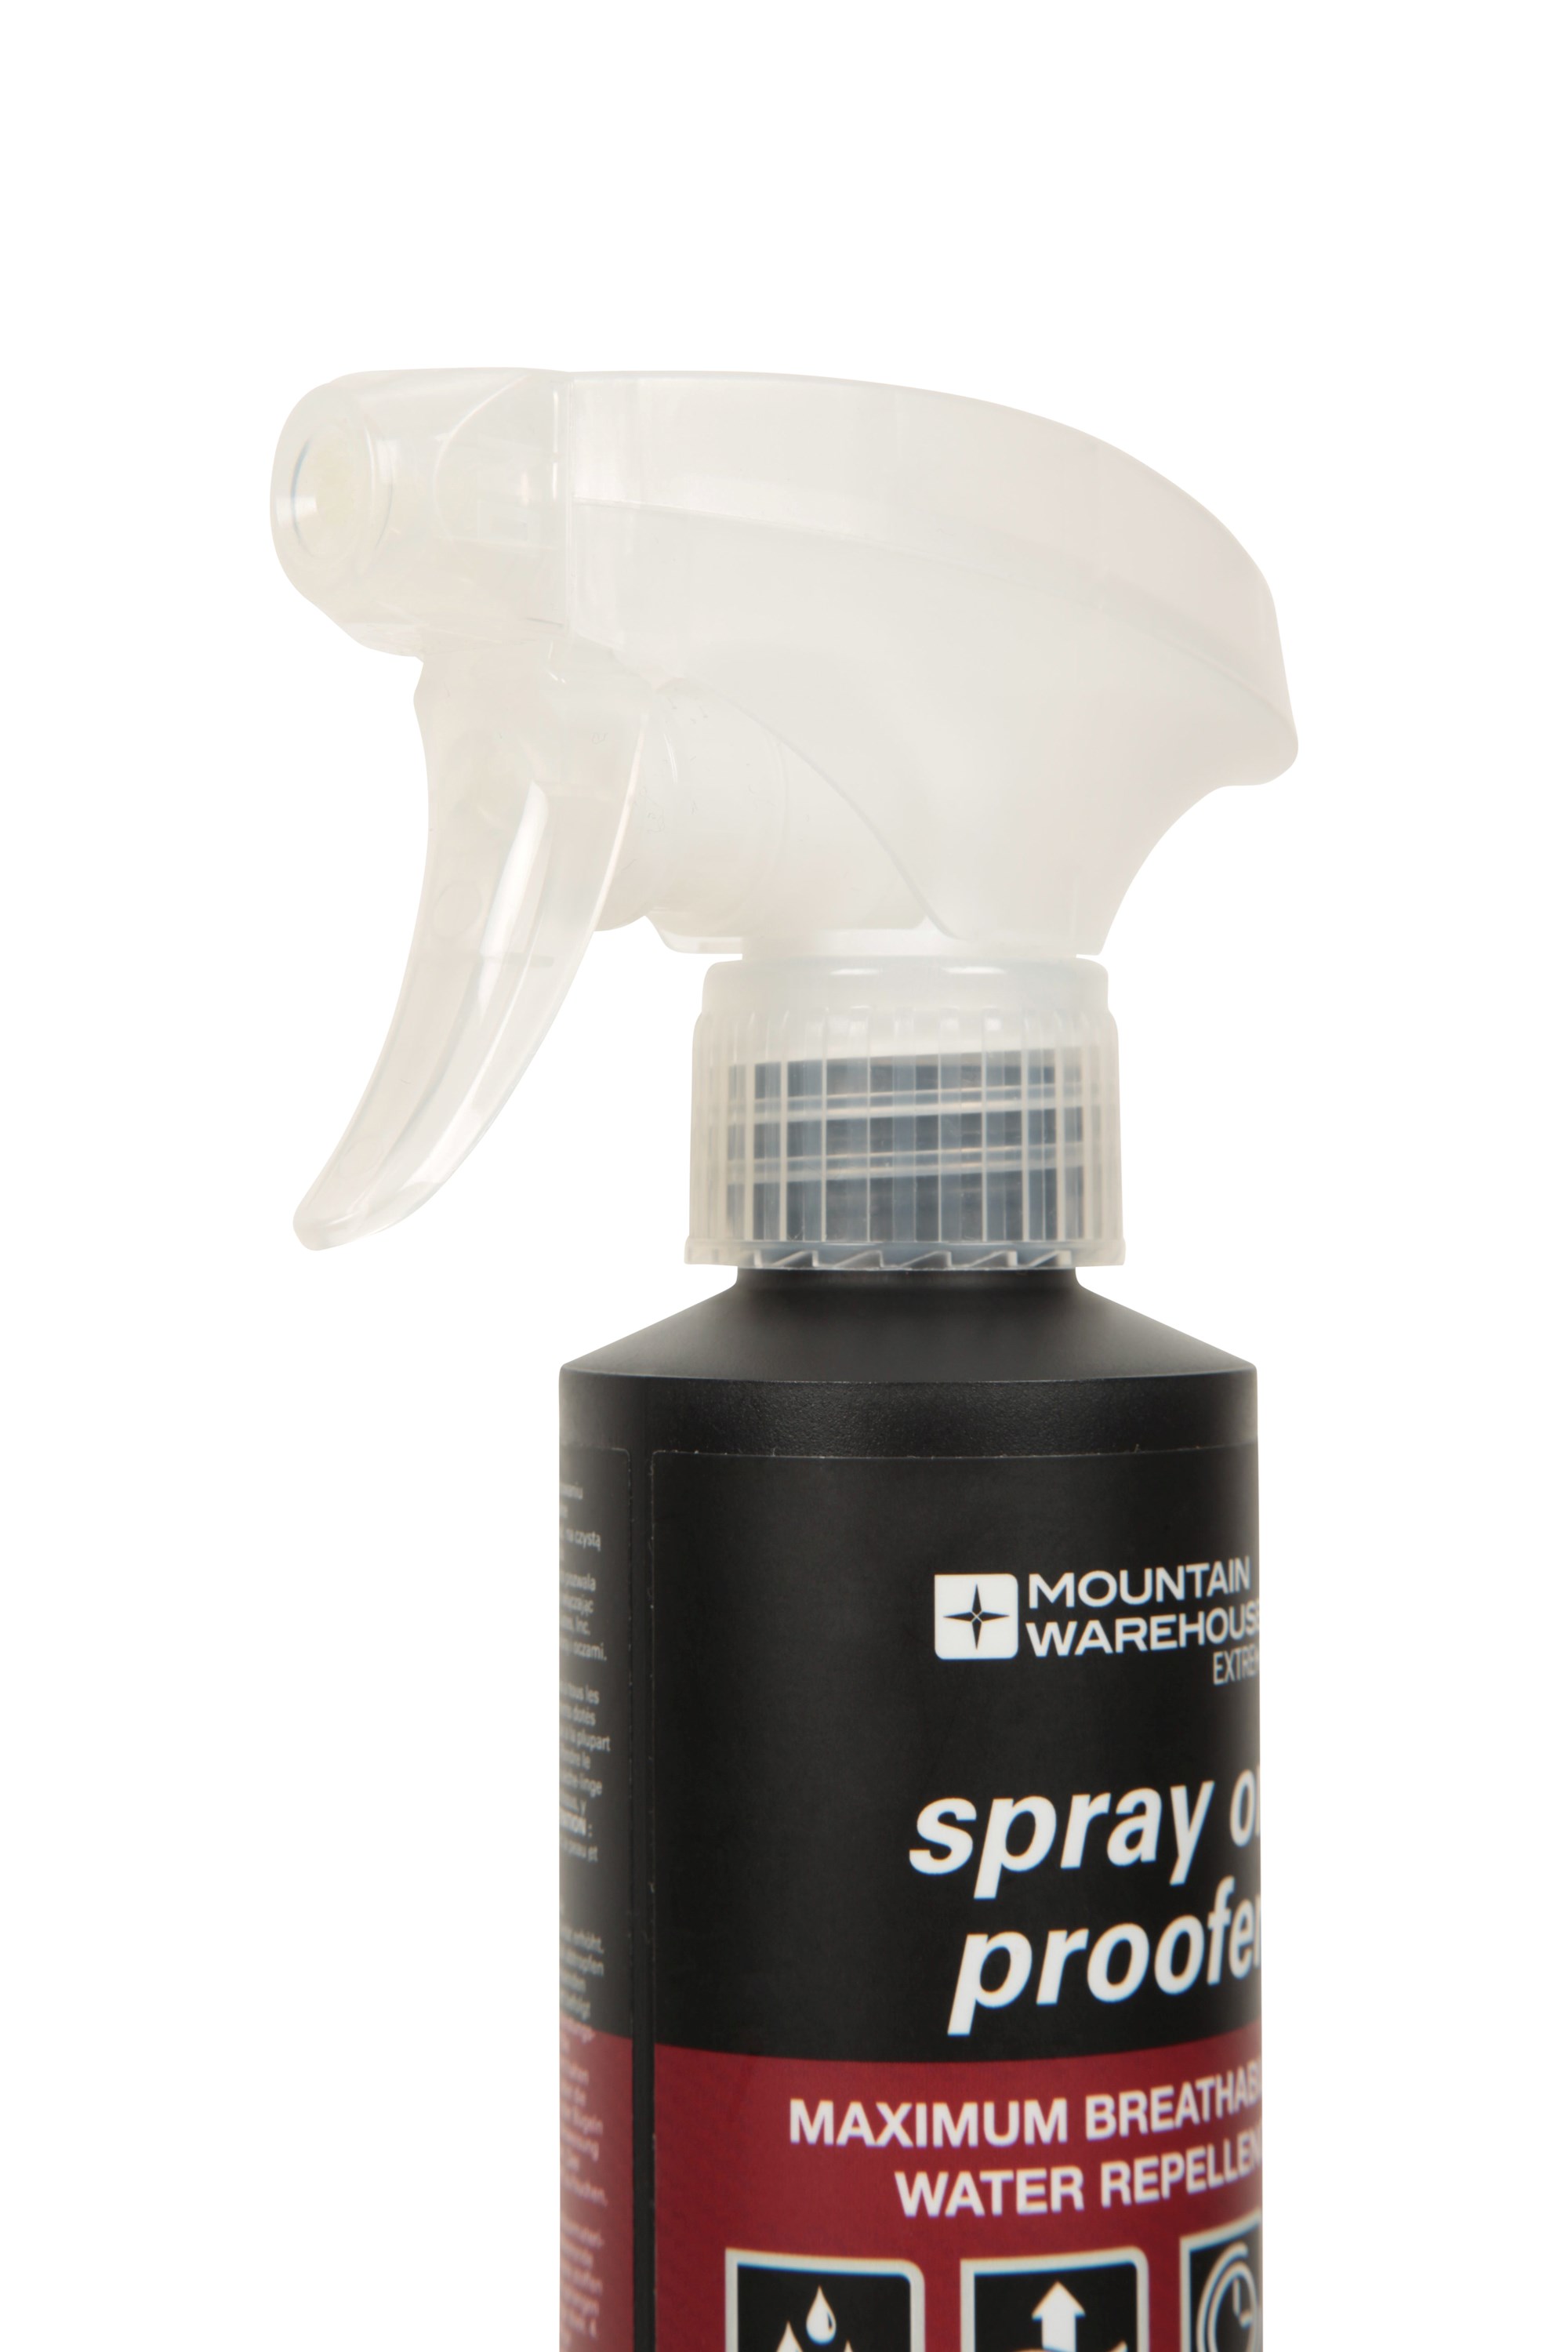 Waterproofing spray